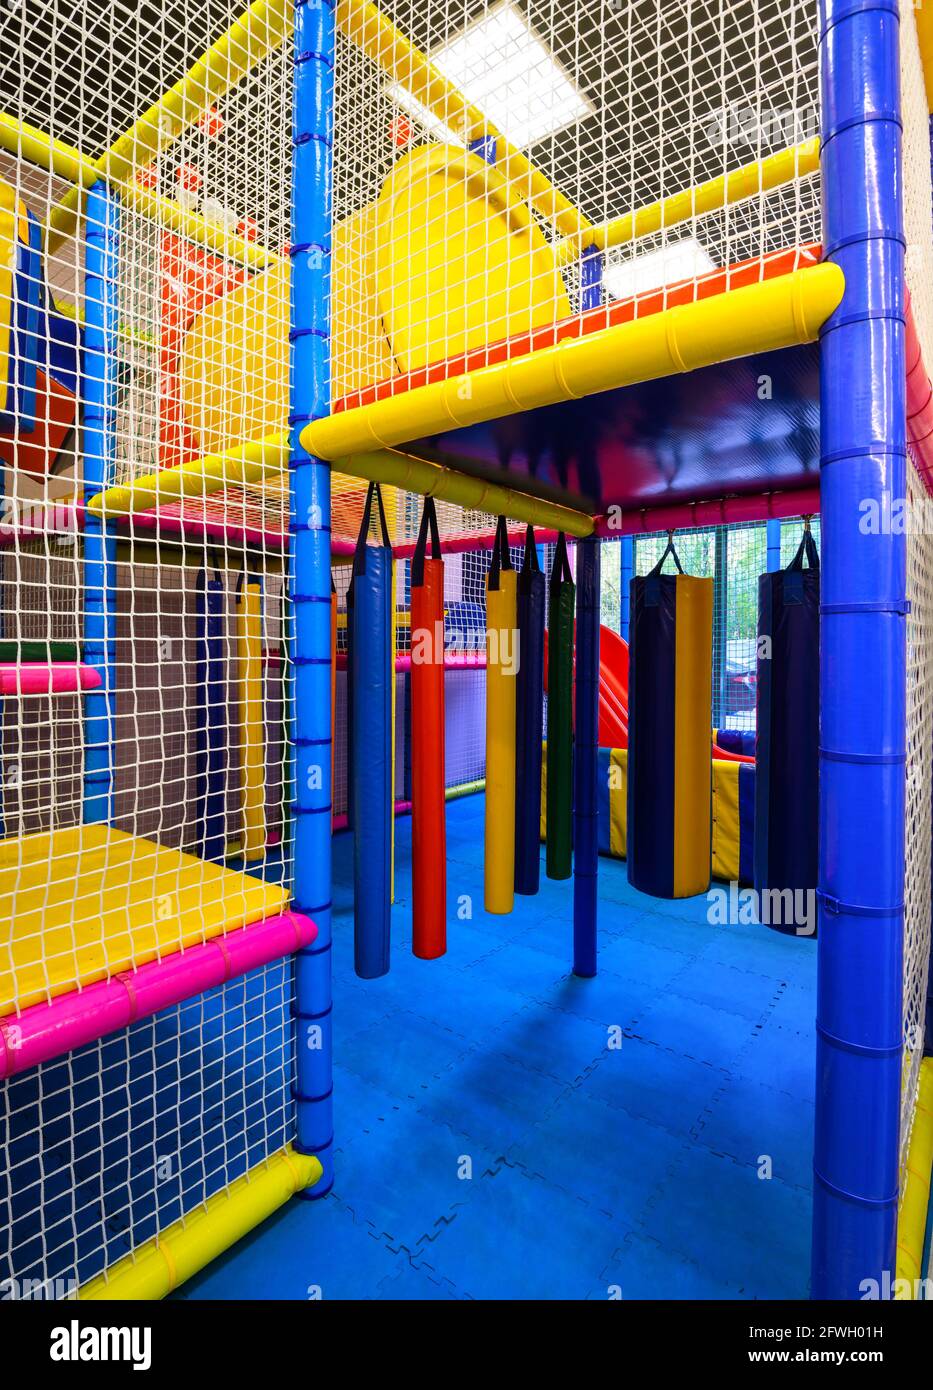 Kinderspielplatz im Haus, innen schöner mehrstufiger Spielraum für Sportspiele. Vertikale Ansicht von bunten Kunststoff-Spielplatz im Kindergarten oder Unterhaltung Stockfoto